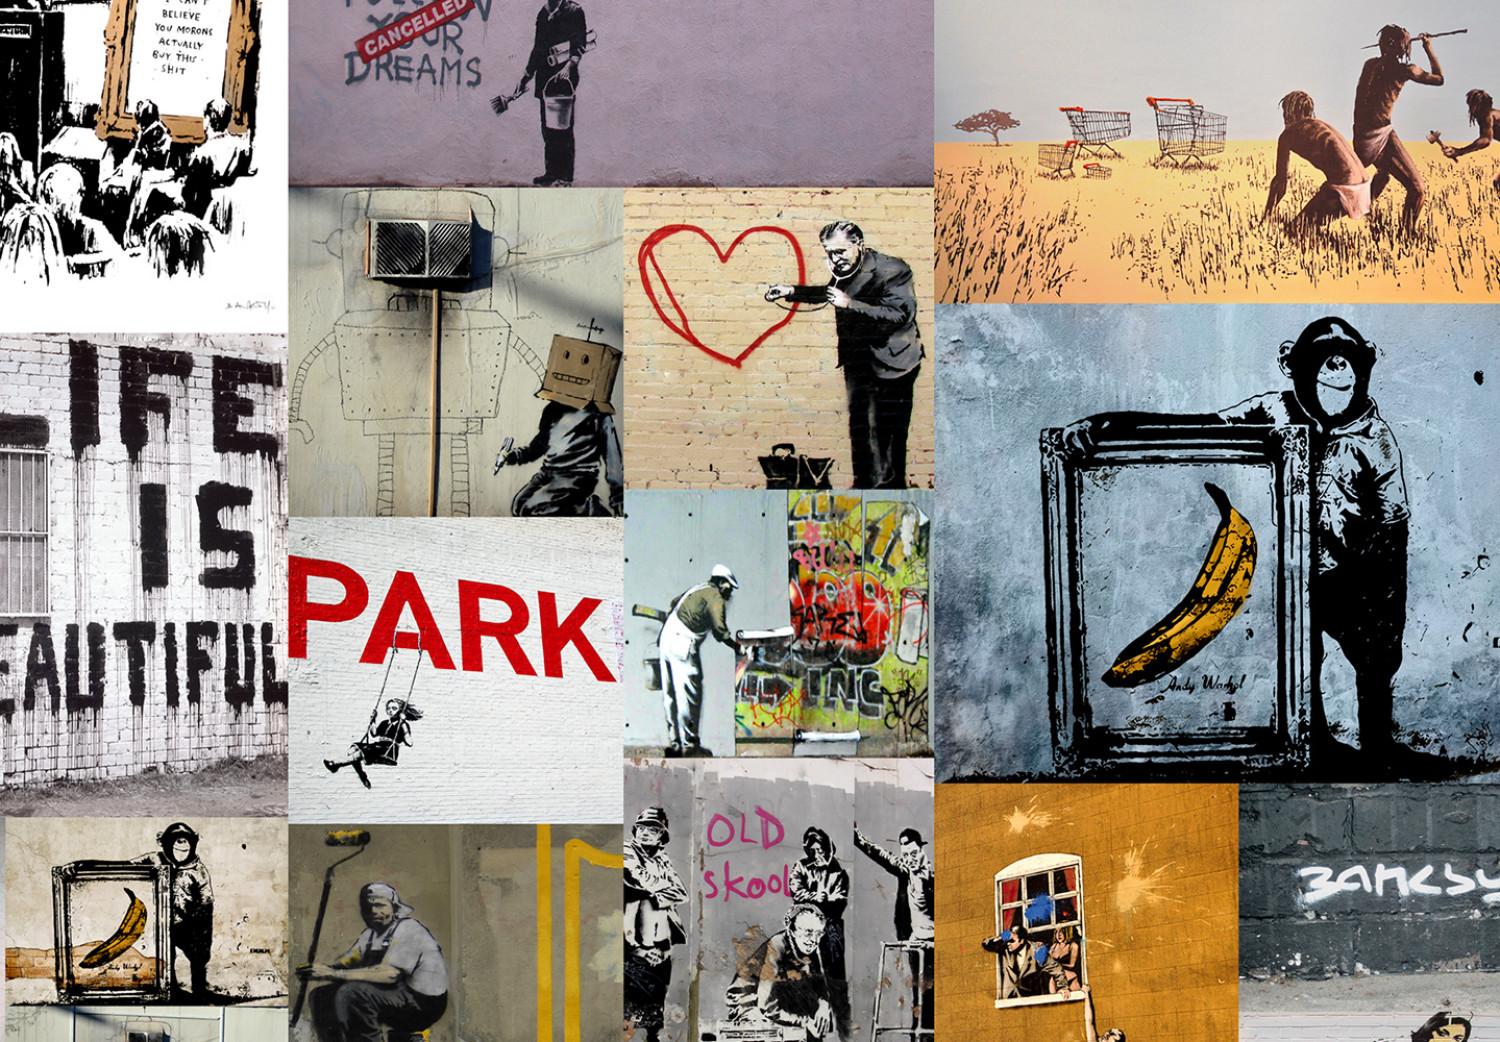 Cuadro Banksy Collage (4 Parts)